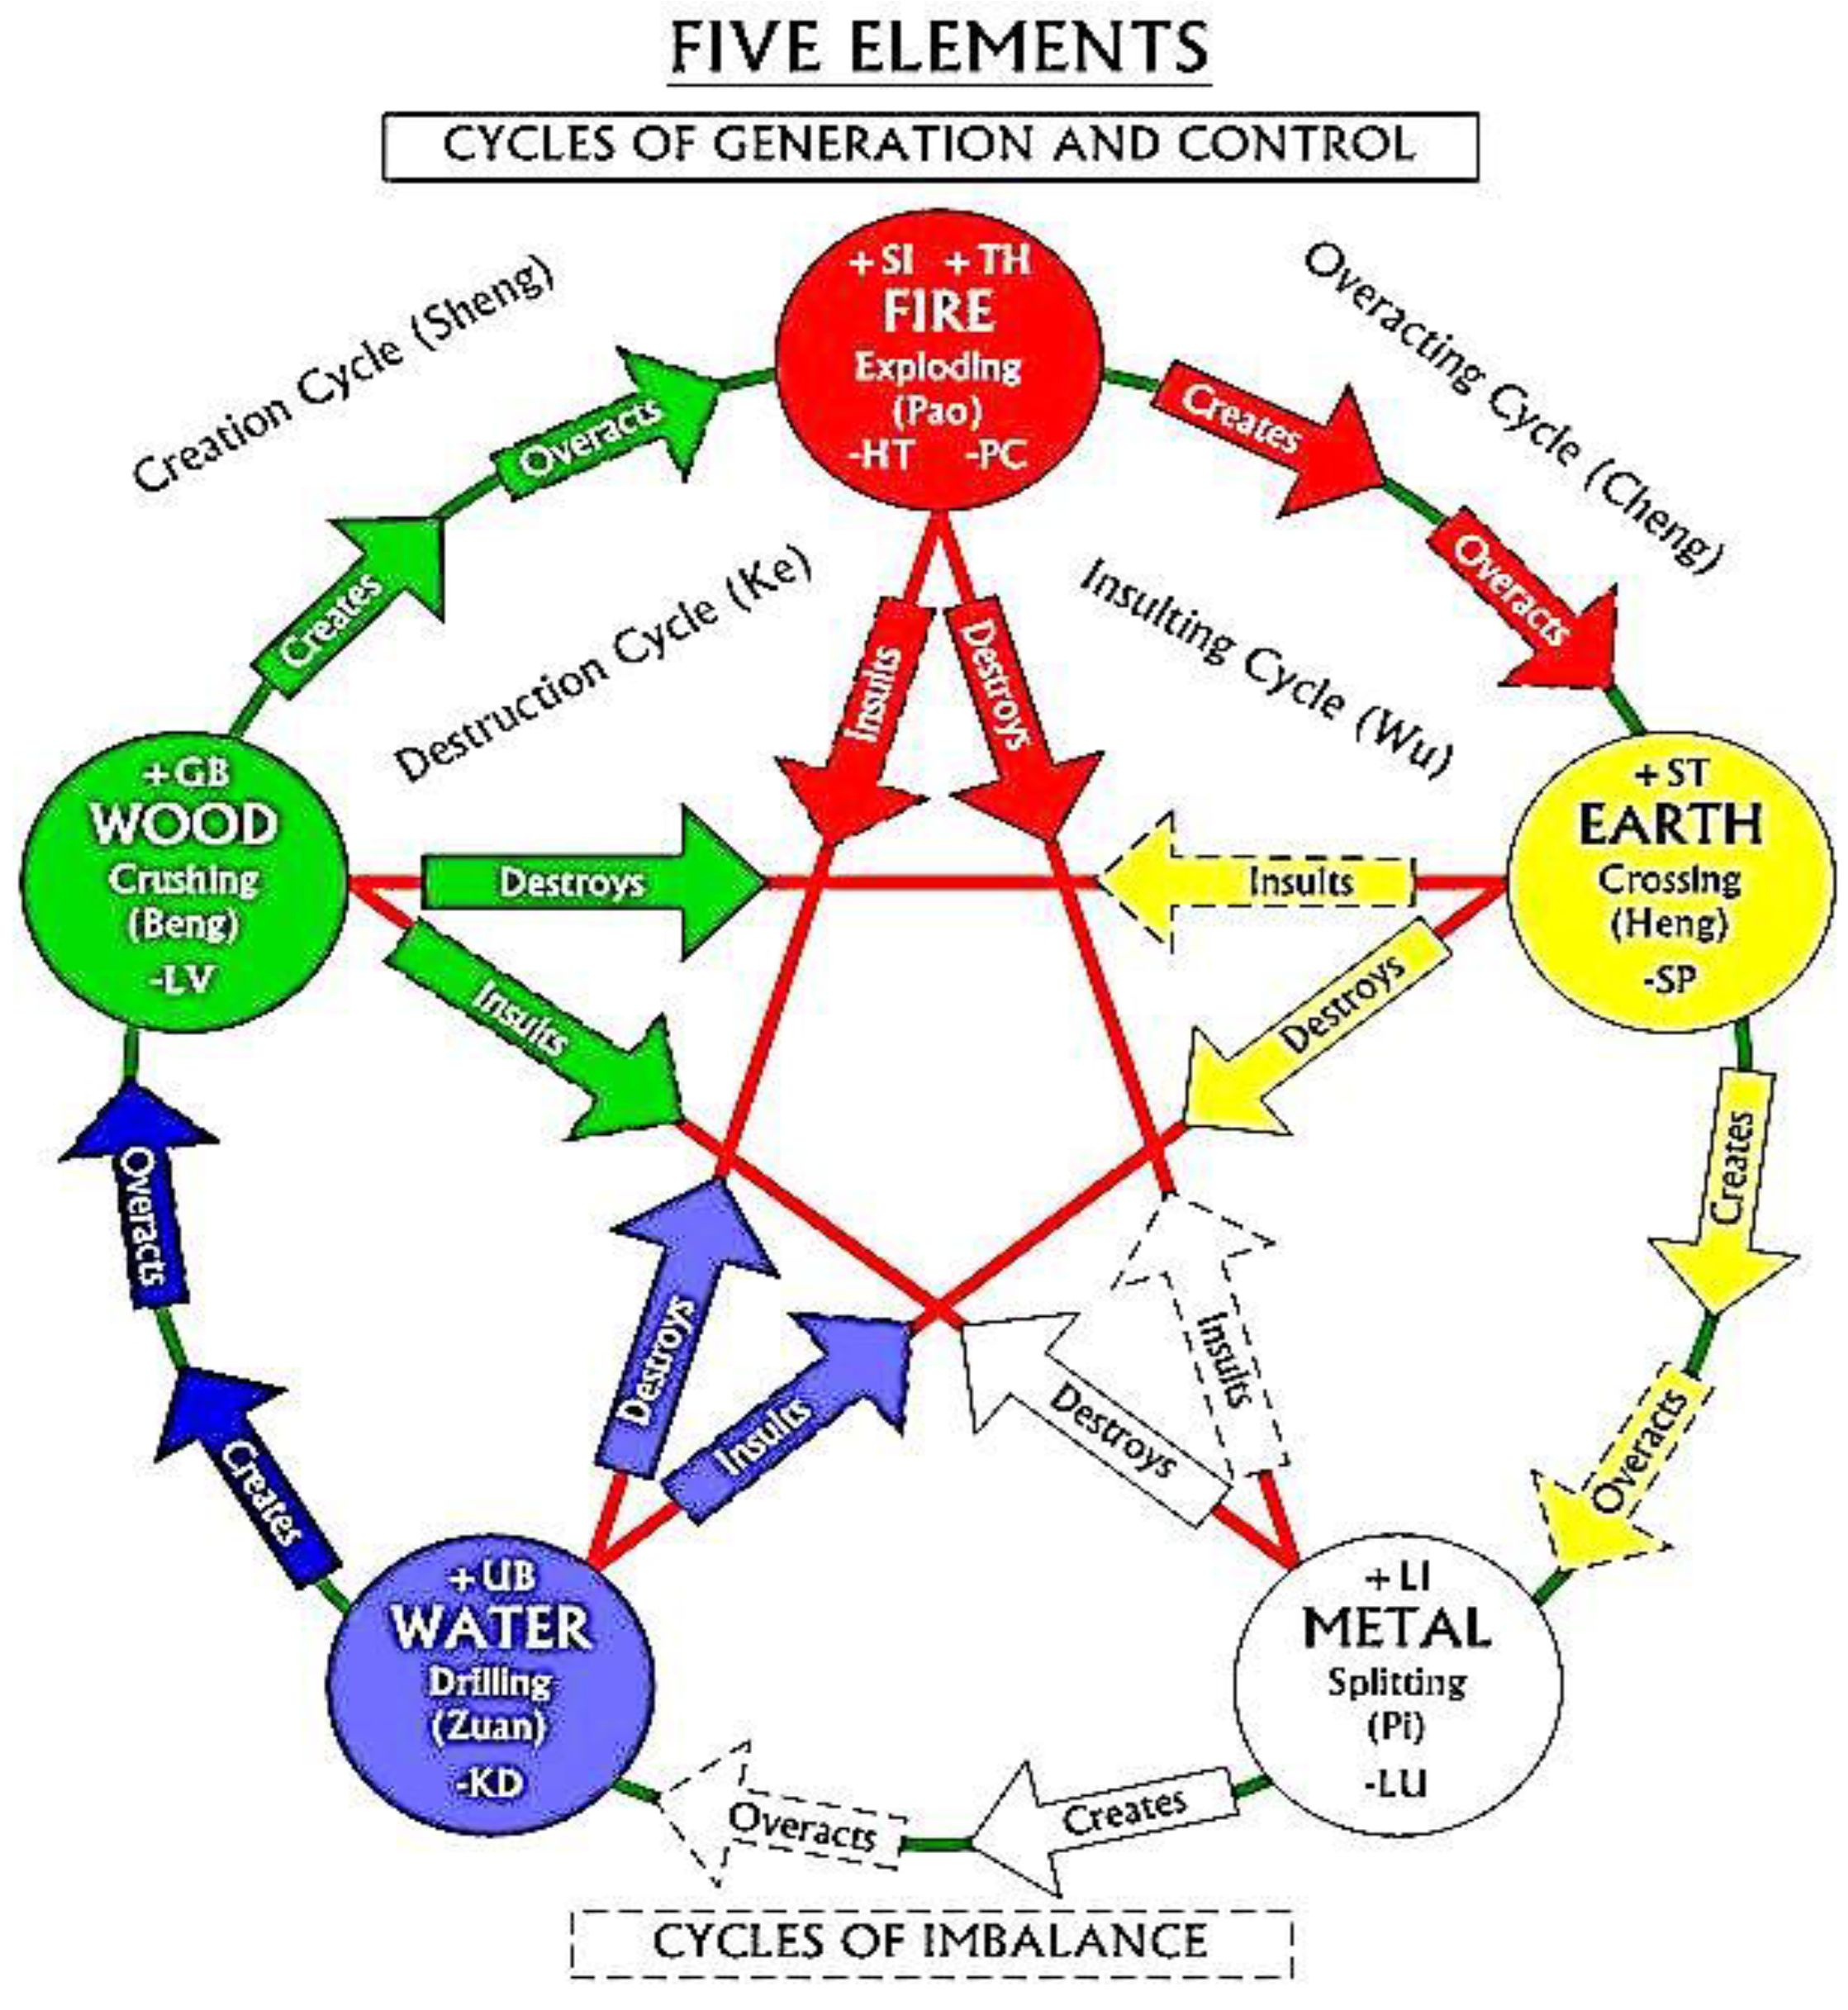 Elements of life. Круг у-син 5 элементов. У-син цикл порождения. Пентаграмма пяти элементов. Теория Усин китайская.